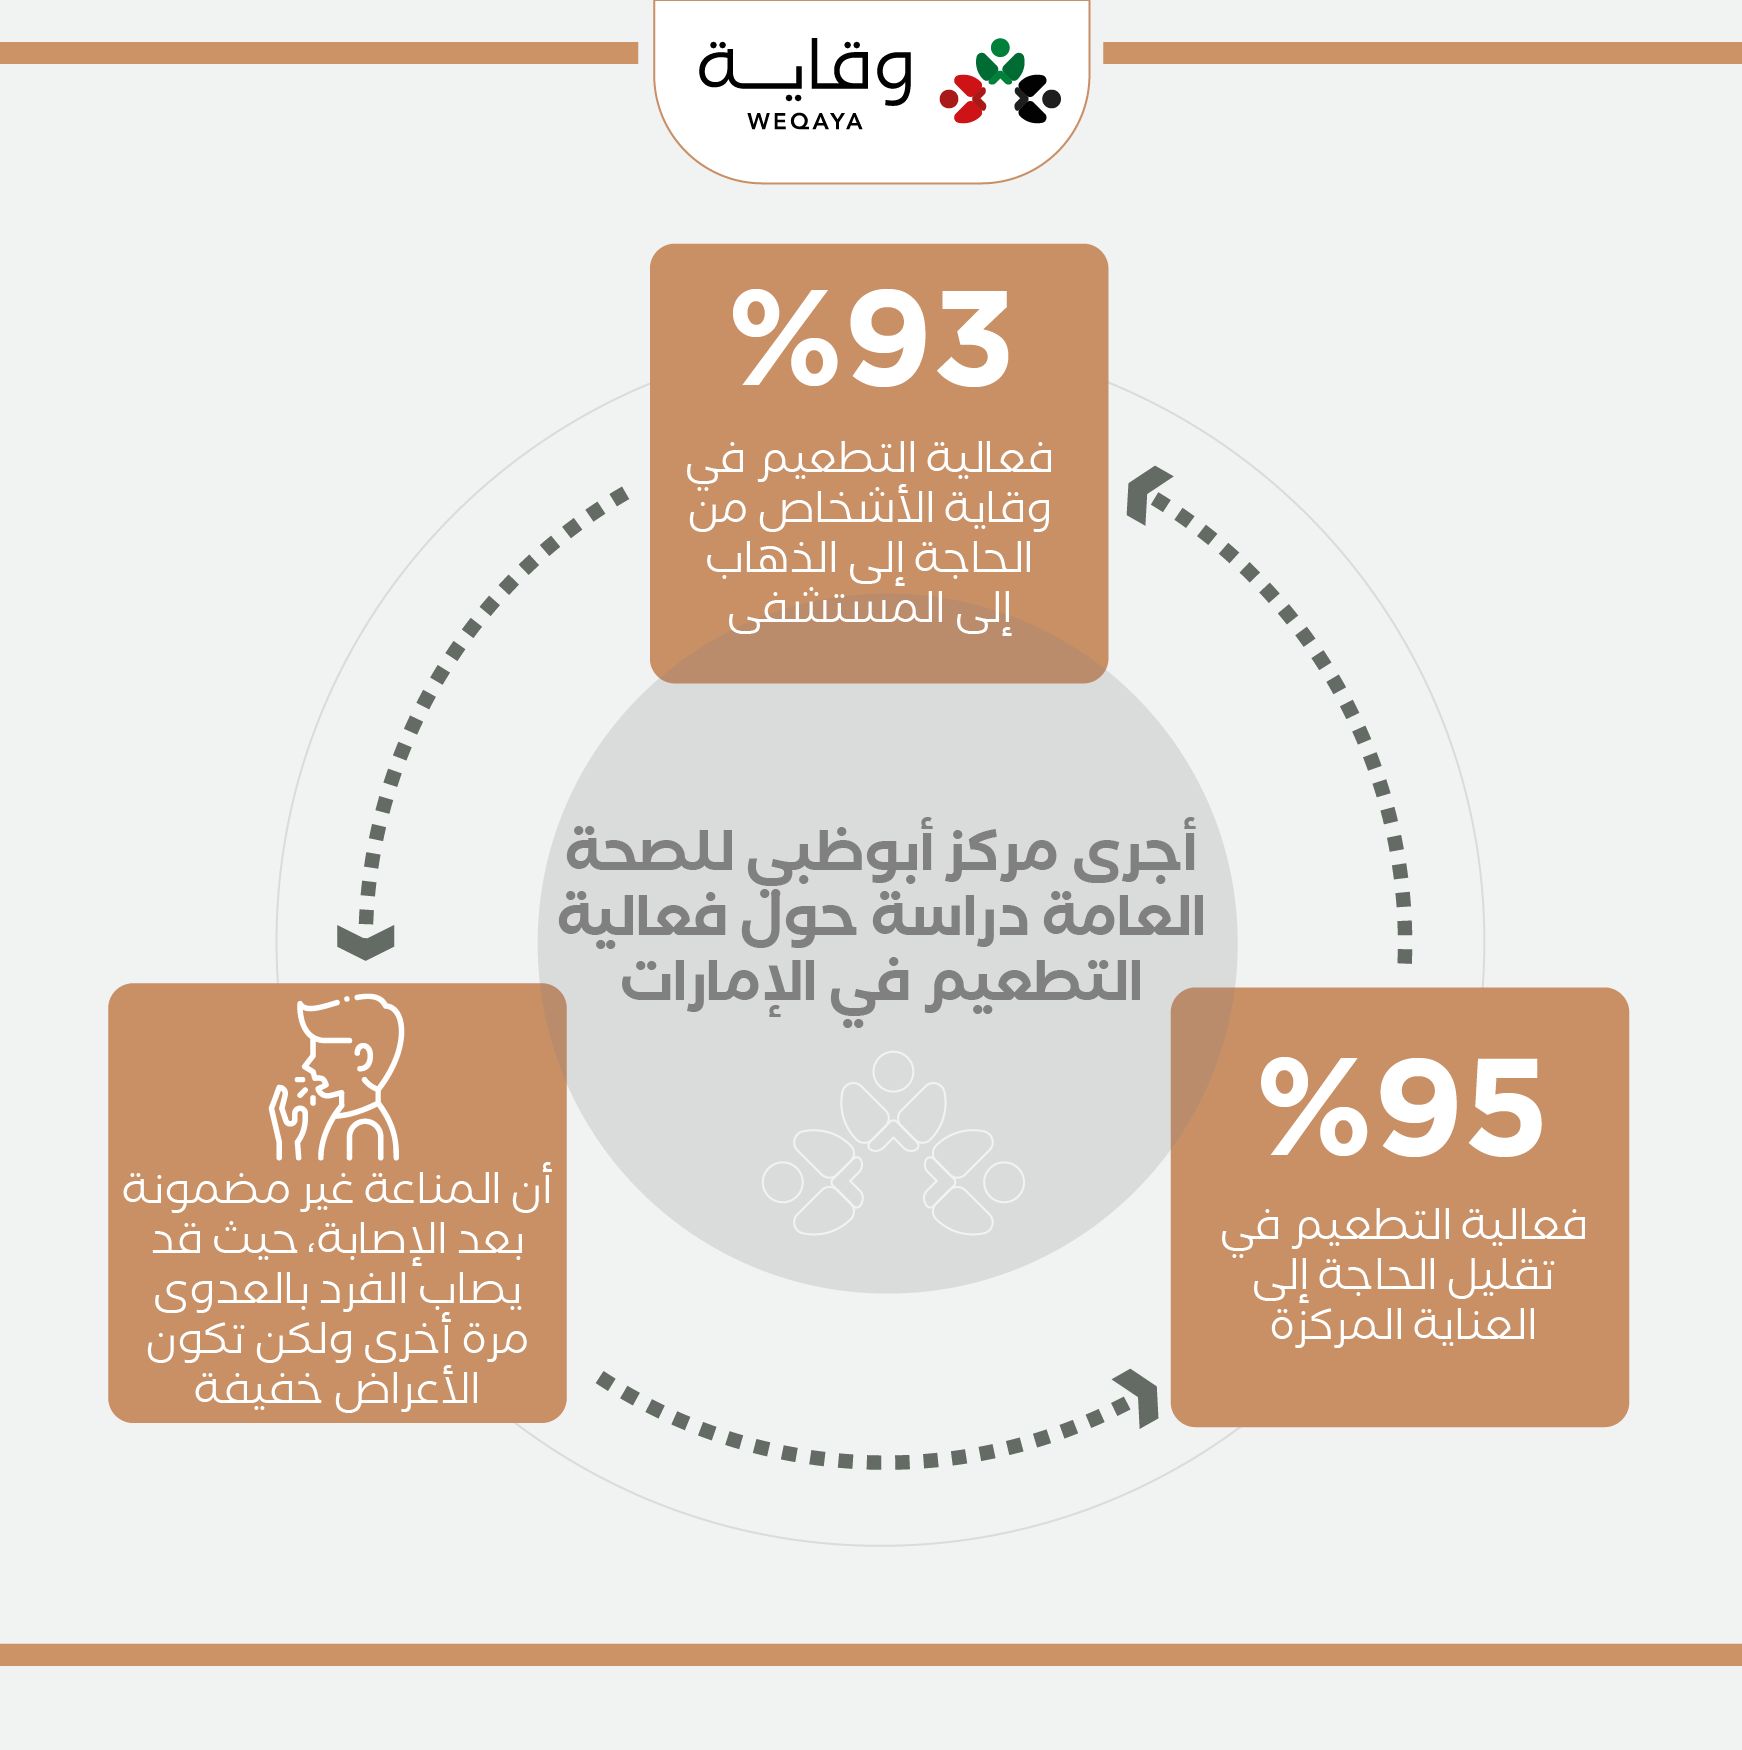 أجرى مركز أبوظبي للصحة العامة دراسة حول فعالية التطعيم في الإمارة